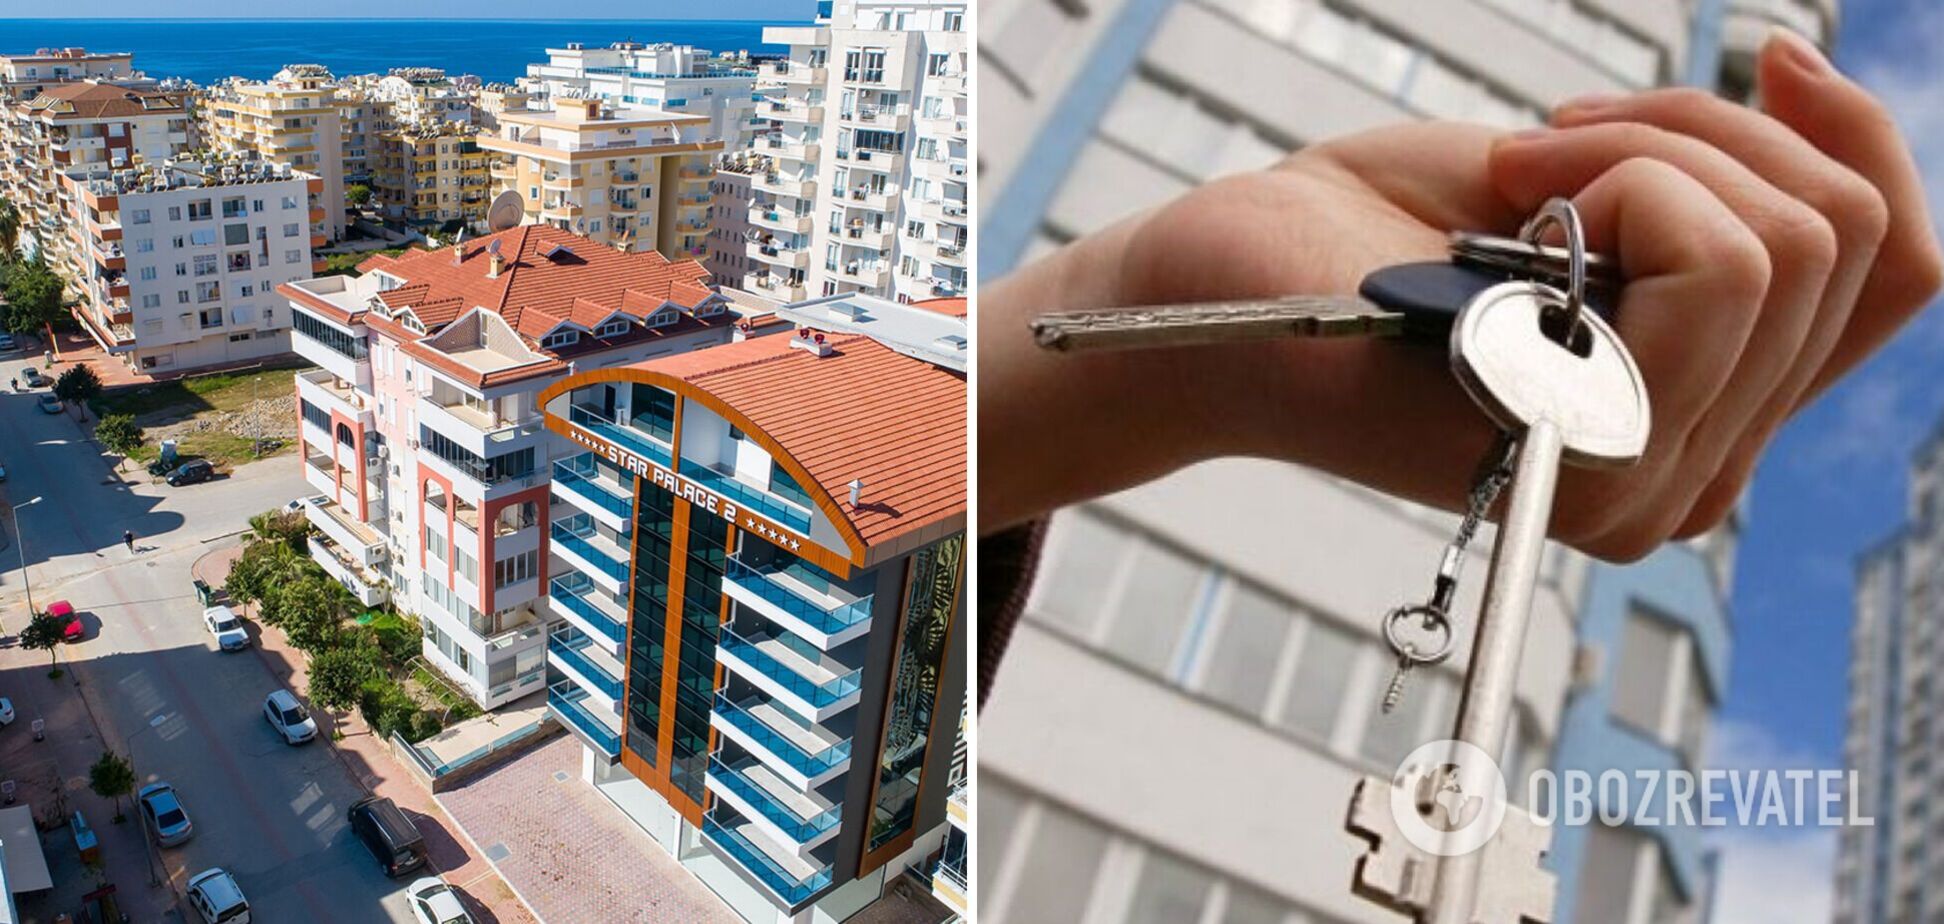 Украинцы активно скупают недвижимость в Турции: каждый месяц – по 100 квартир и домов